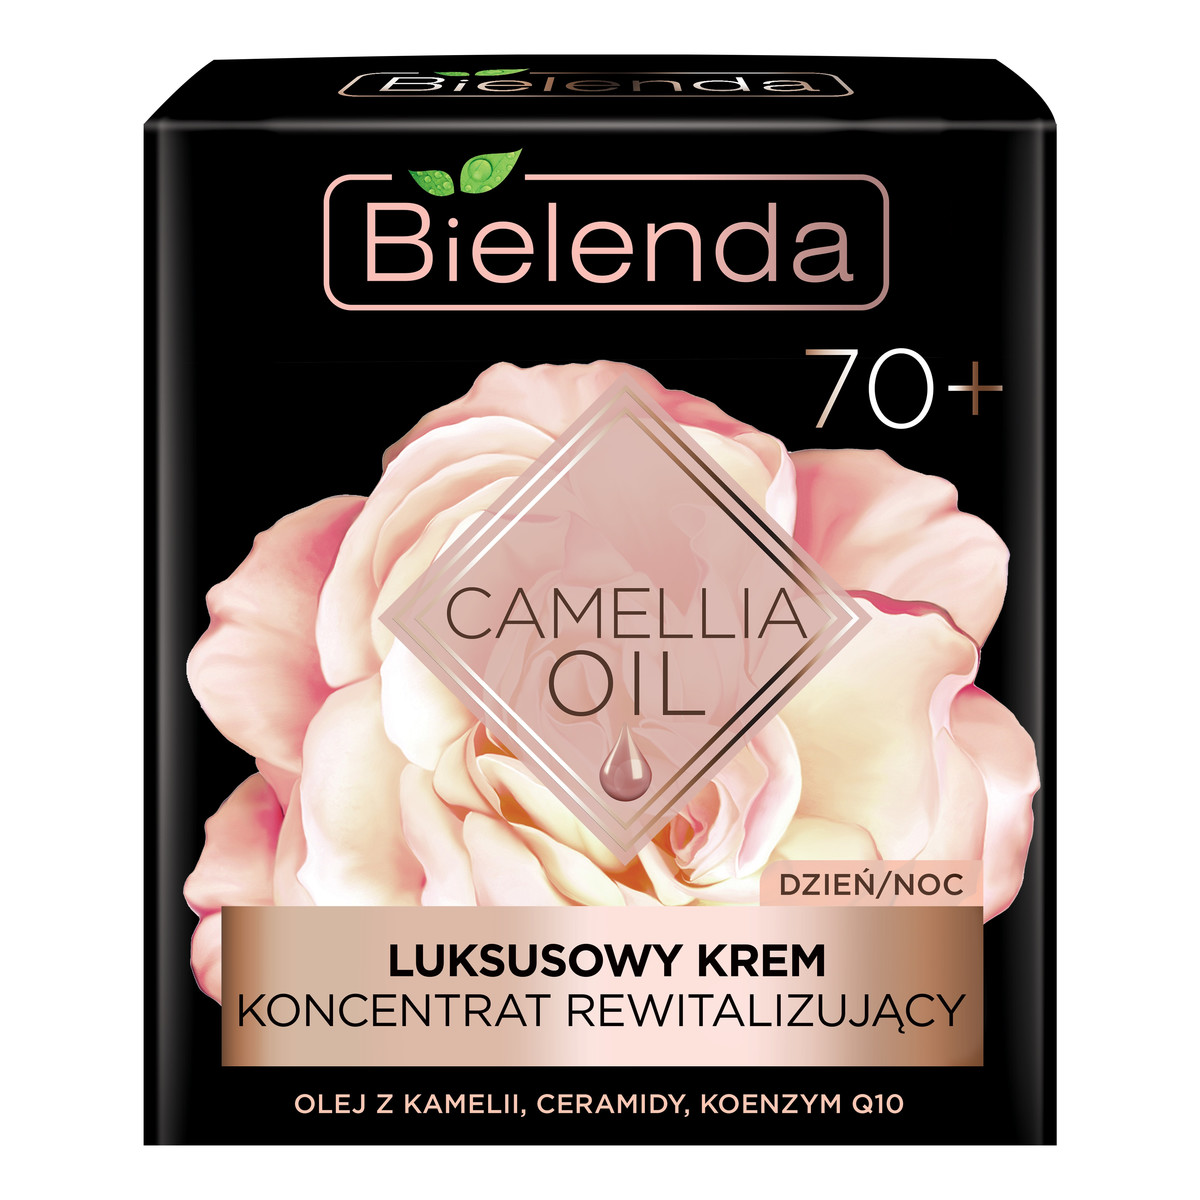 Bielenda Camellia Oil 70+ Luksusowy Krem-koncentrat rewitalizujący na dzień i noc 50ml